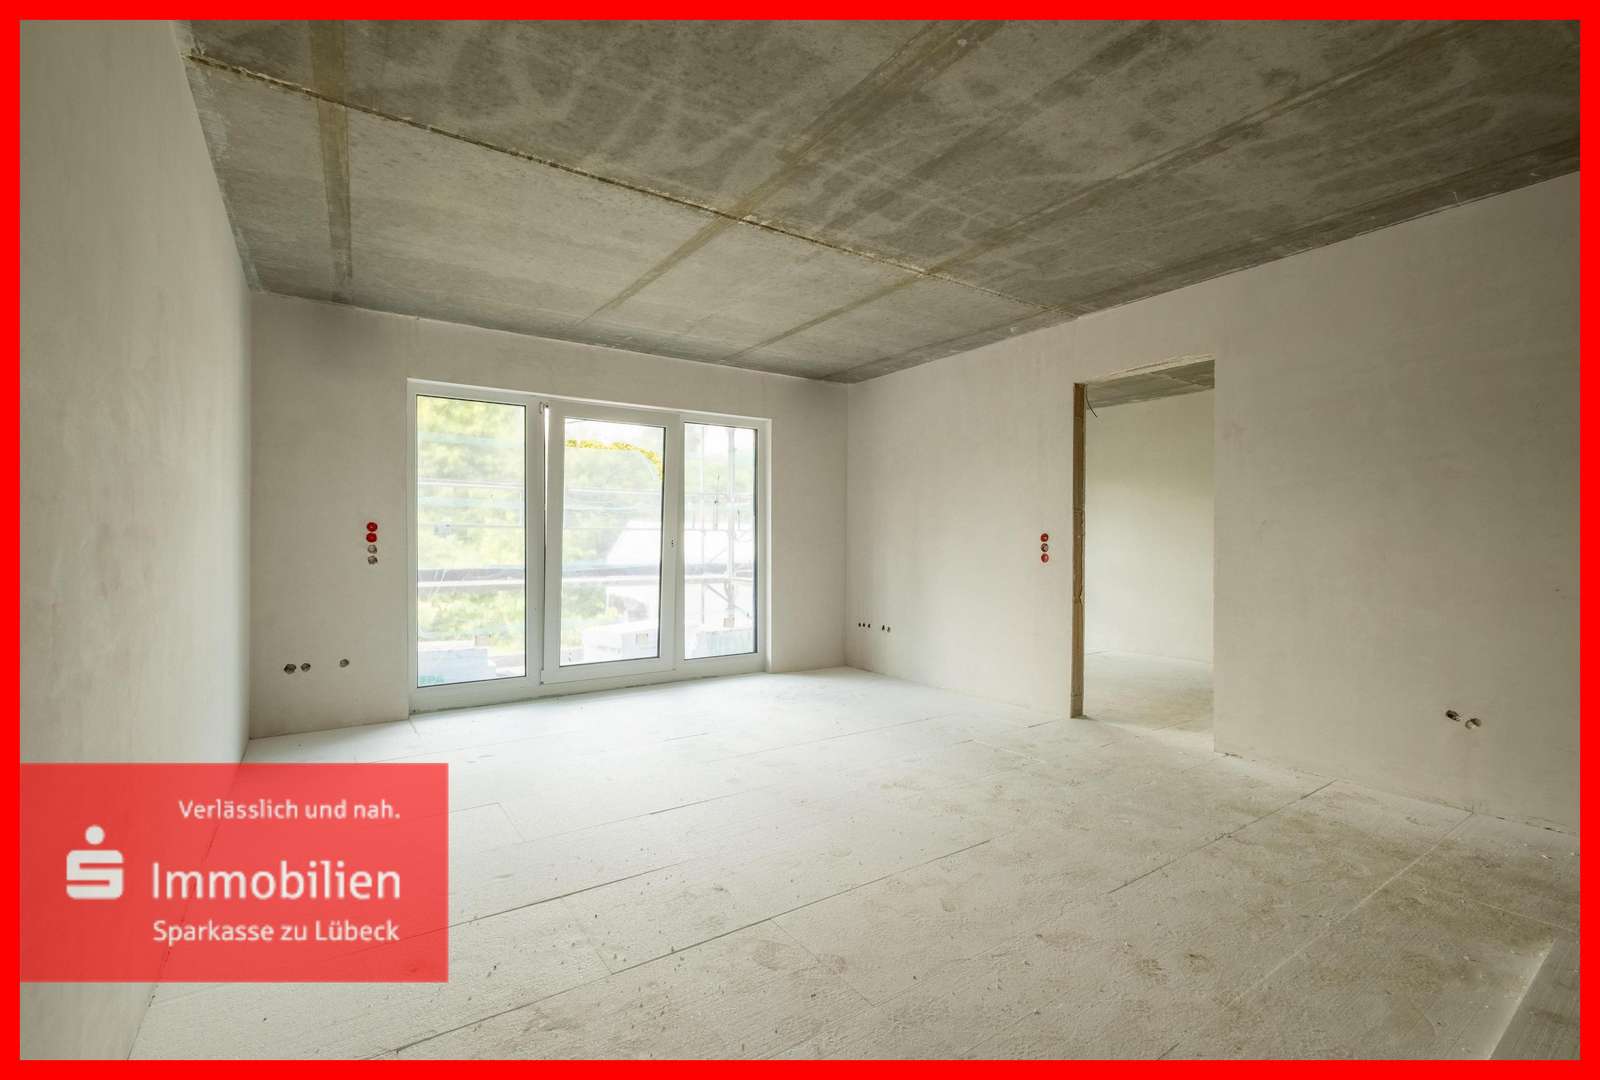 Wohnen - Etagenwohnung in 23843 Bad Oldesloe mit 62m² kaufen